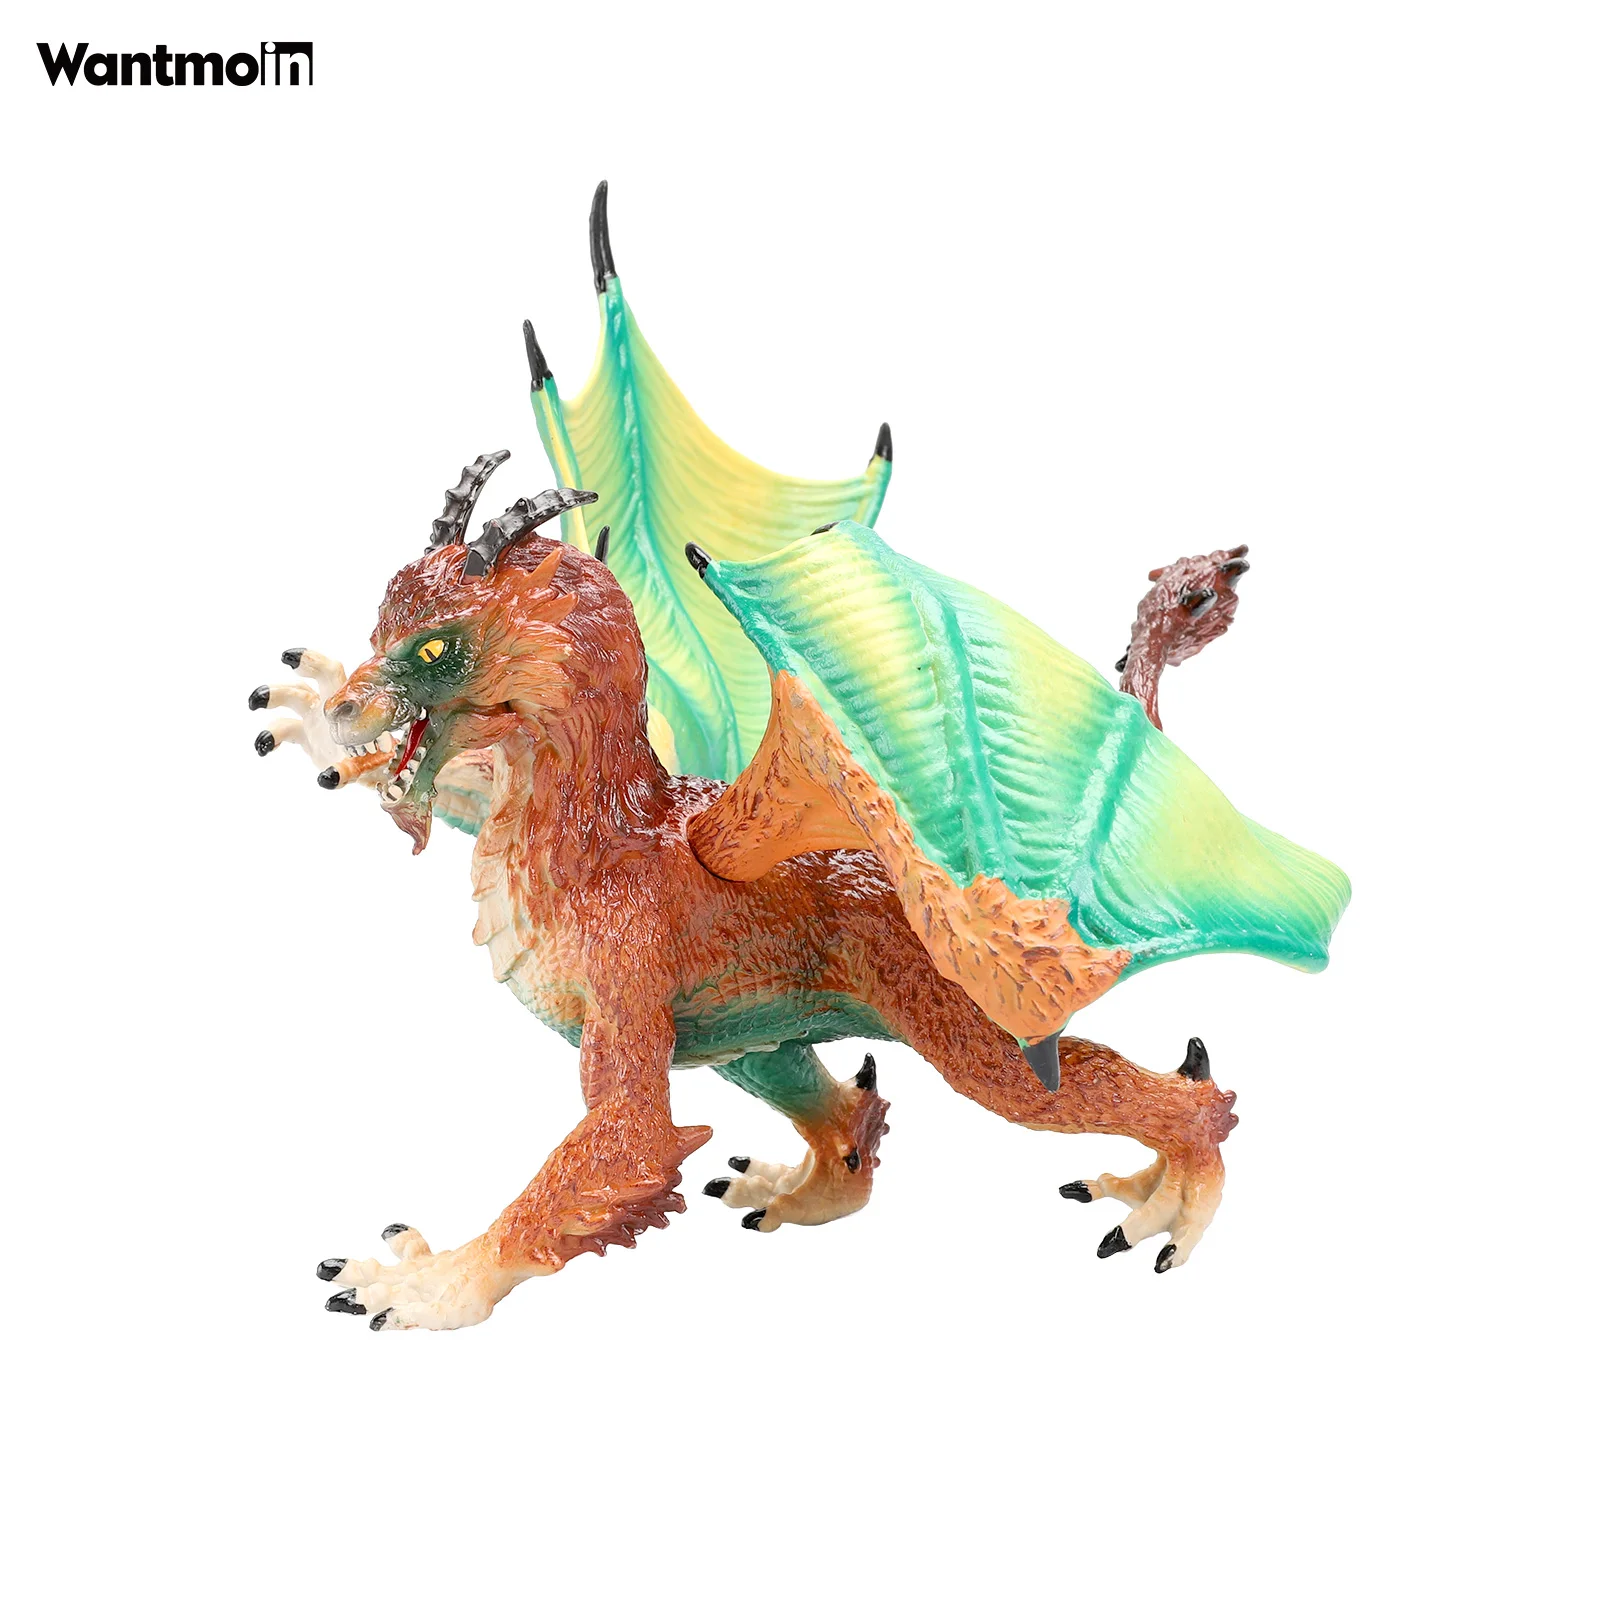 Игрушка Дракон Неукротимых Легенд Wantmoin - пластиковая фигурка животного для коллекции, подарка, декора дома и праздничных сувениров.